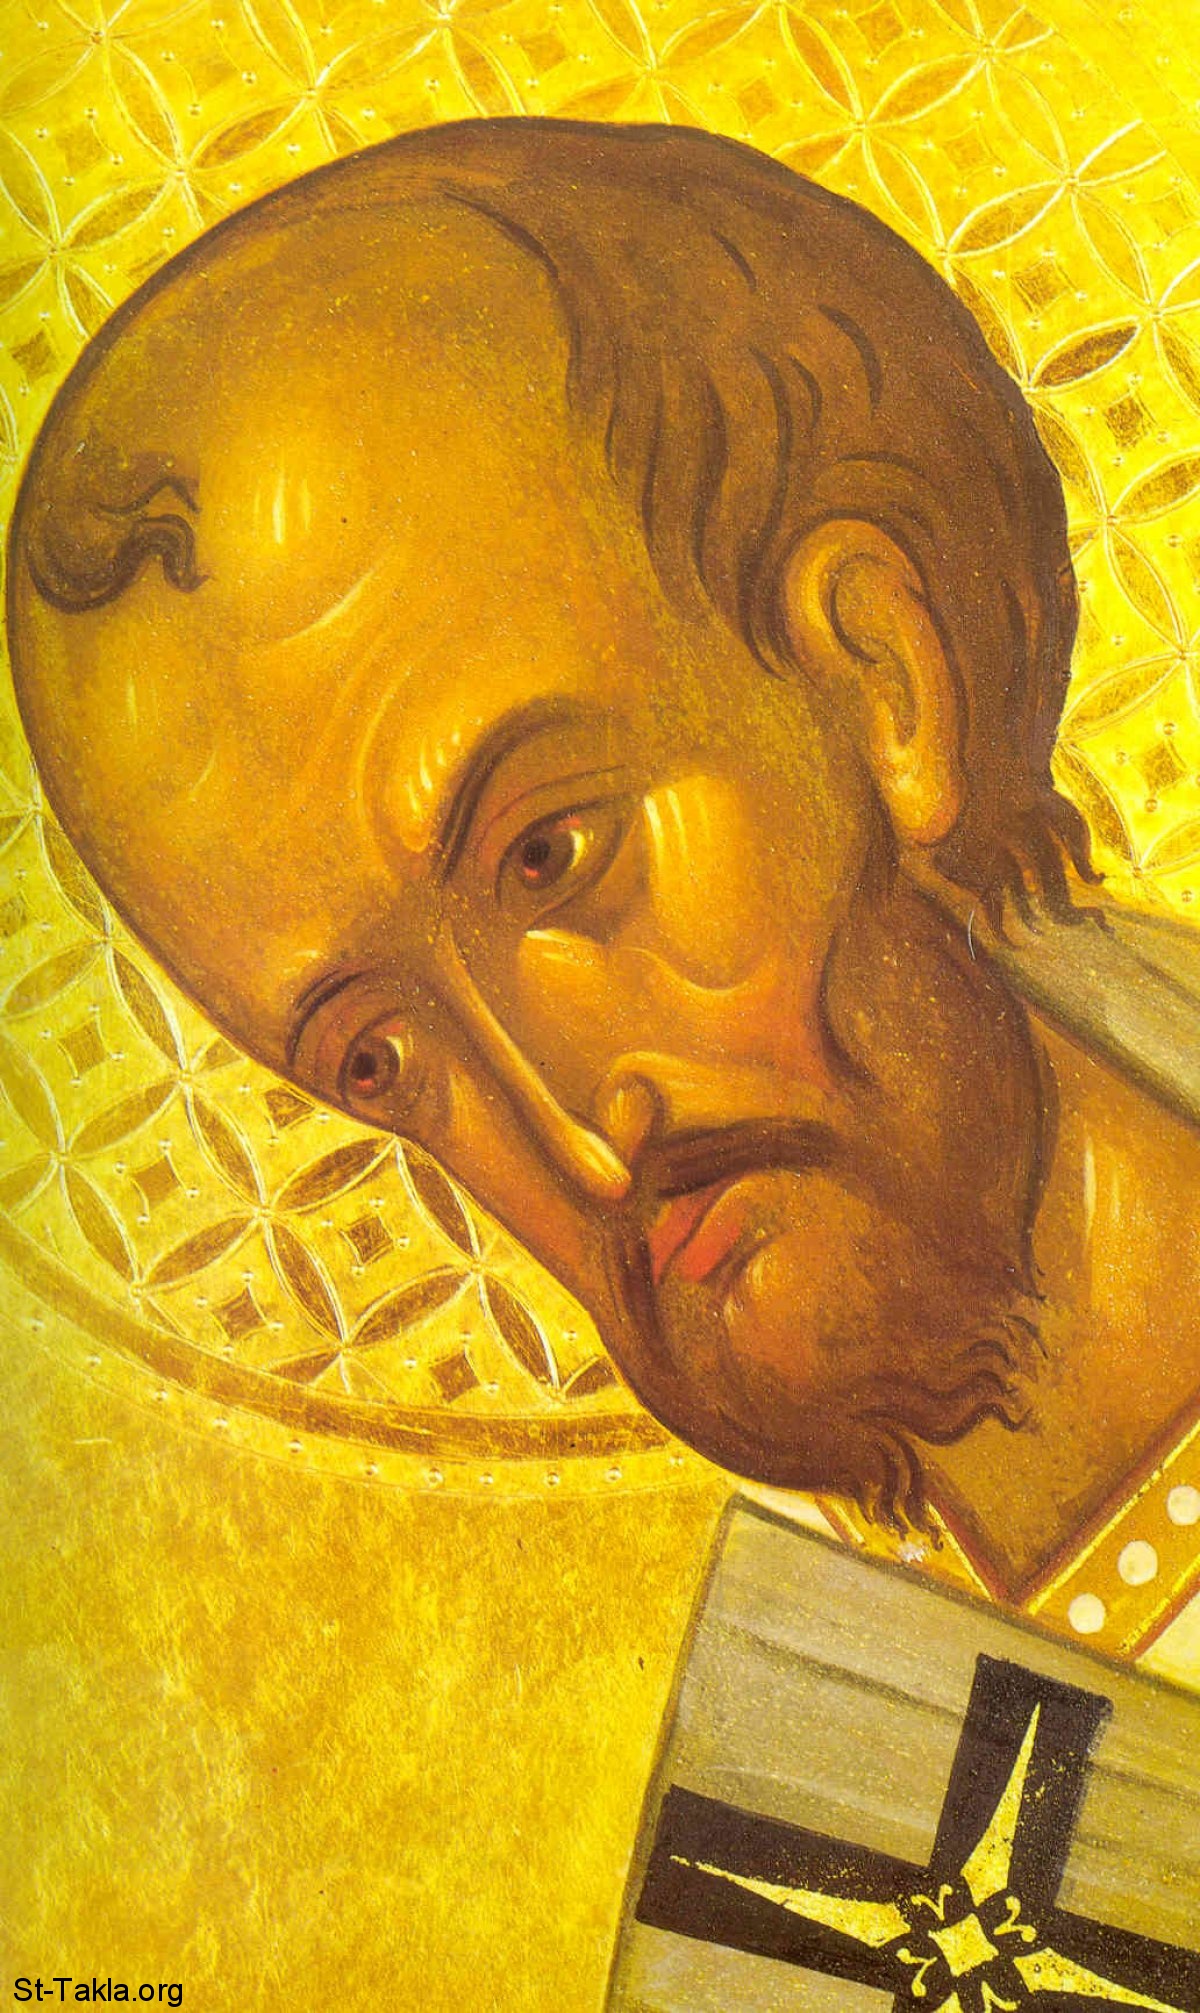 St-Takla.org Image: Saint John Chrysostom icon (St. Youhanna Thahaby Al Famm) صورة في موقع الأنبا تكلا: أيقونة تصور القديس يوحنا فم الذهب (سانت جون كريسوستوم)